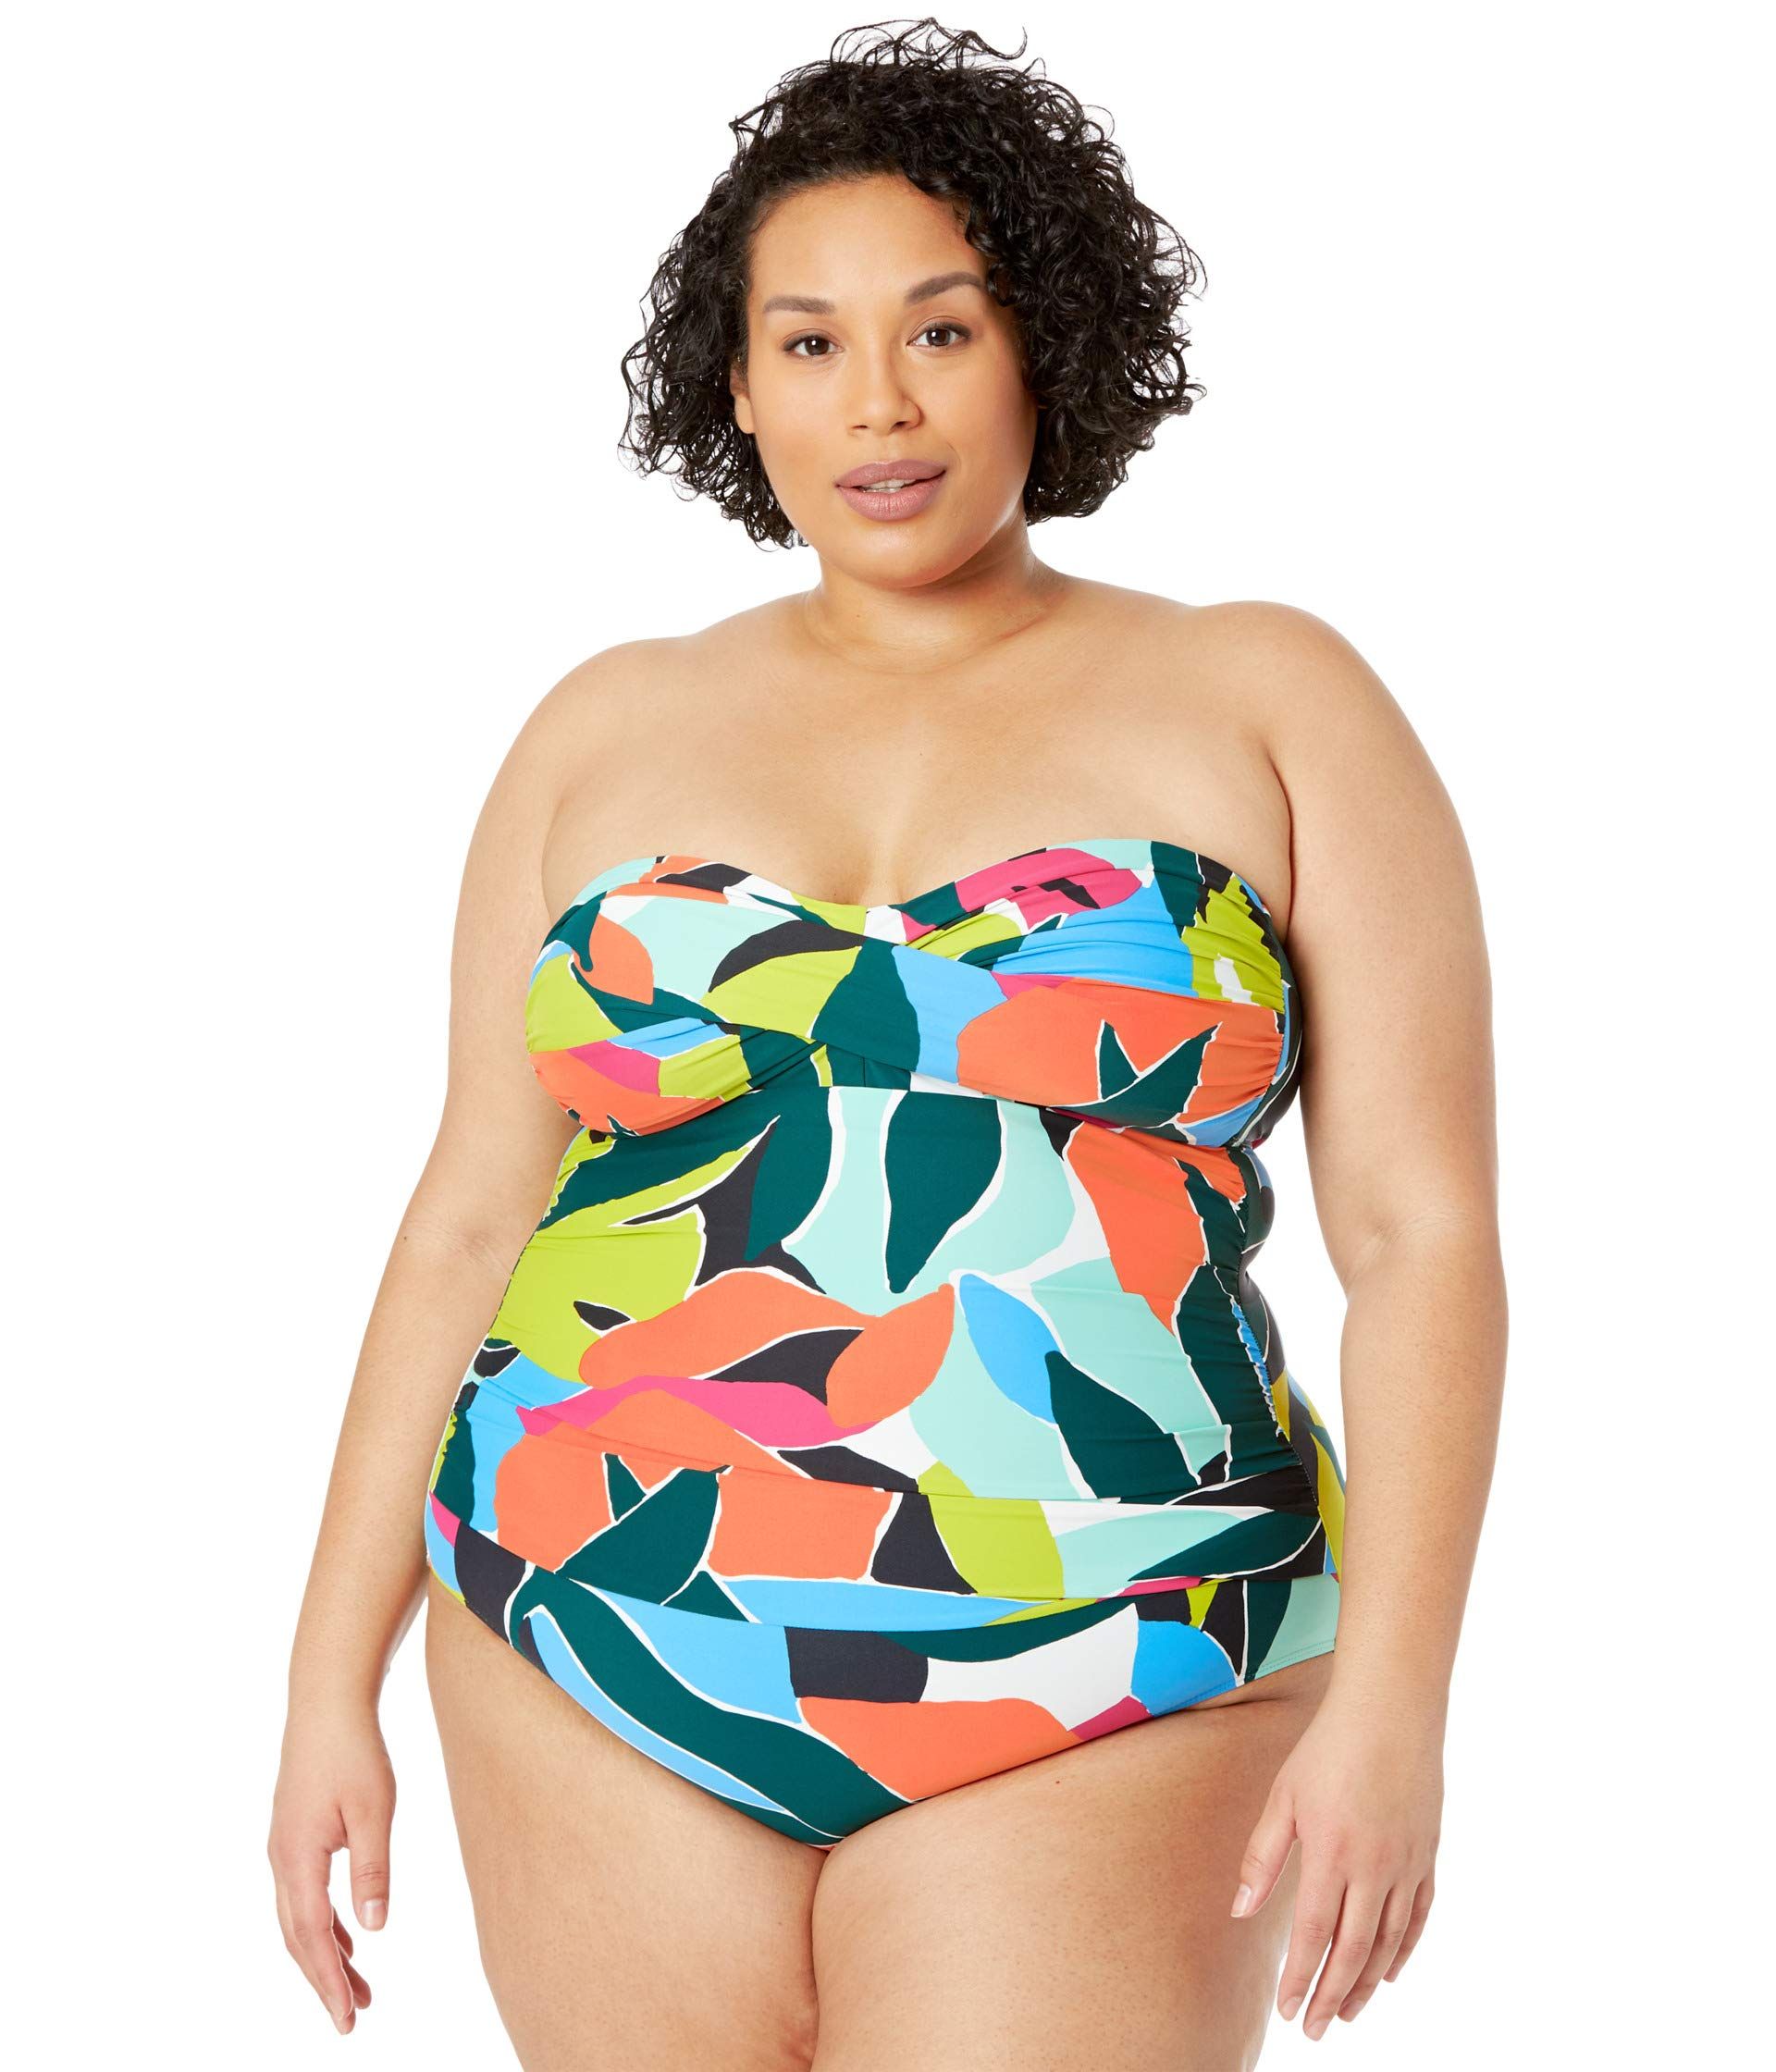 Tænk fremad Underlegen th 25 Best Plus-Size Bathing Suits - Cute Swimsuits For Curvy Women